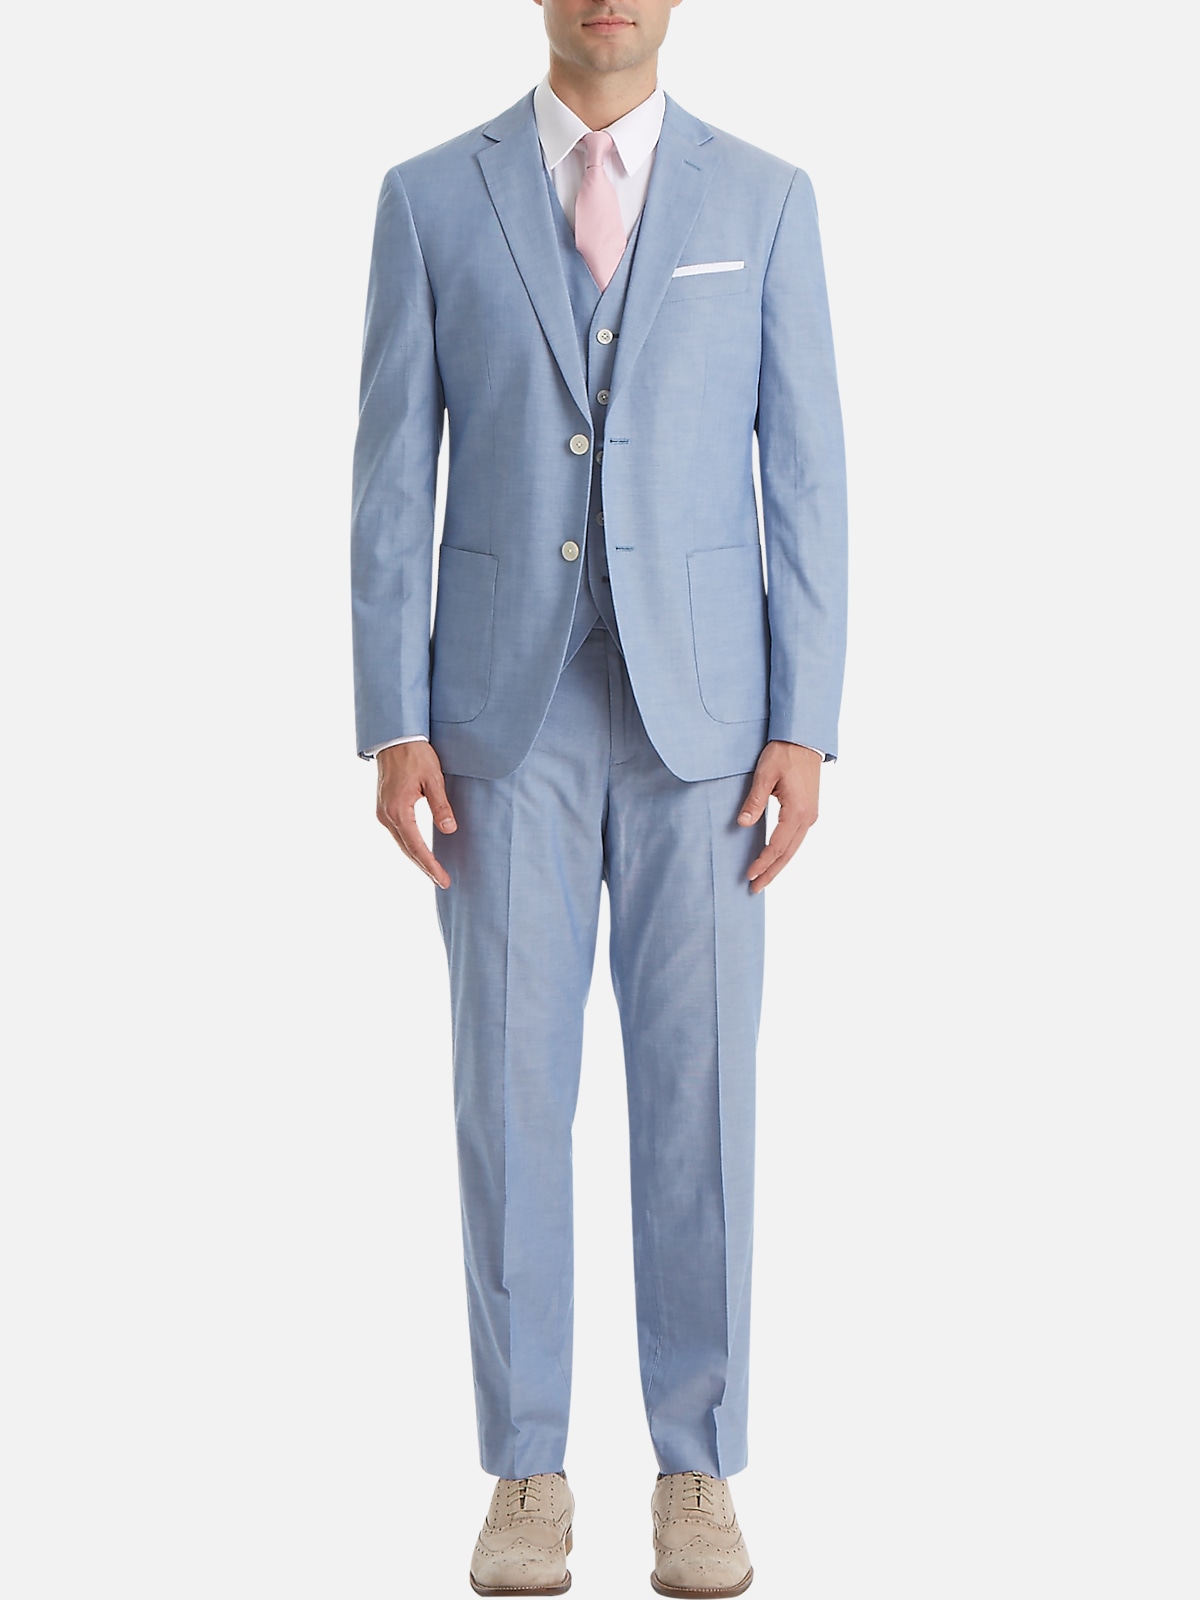 Lauren By Ralph Lauren Classic Fit Suit Separates Jacket | All Sale ...